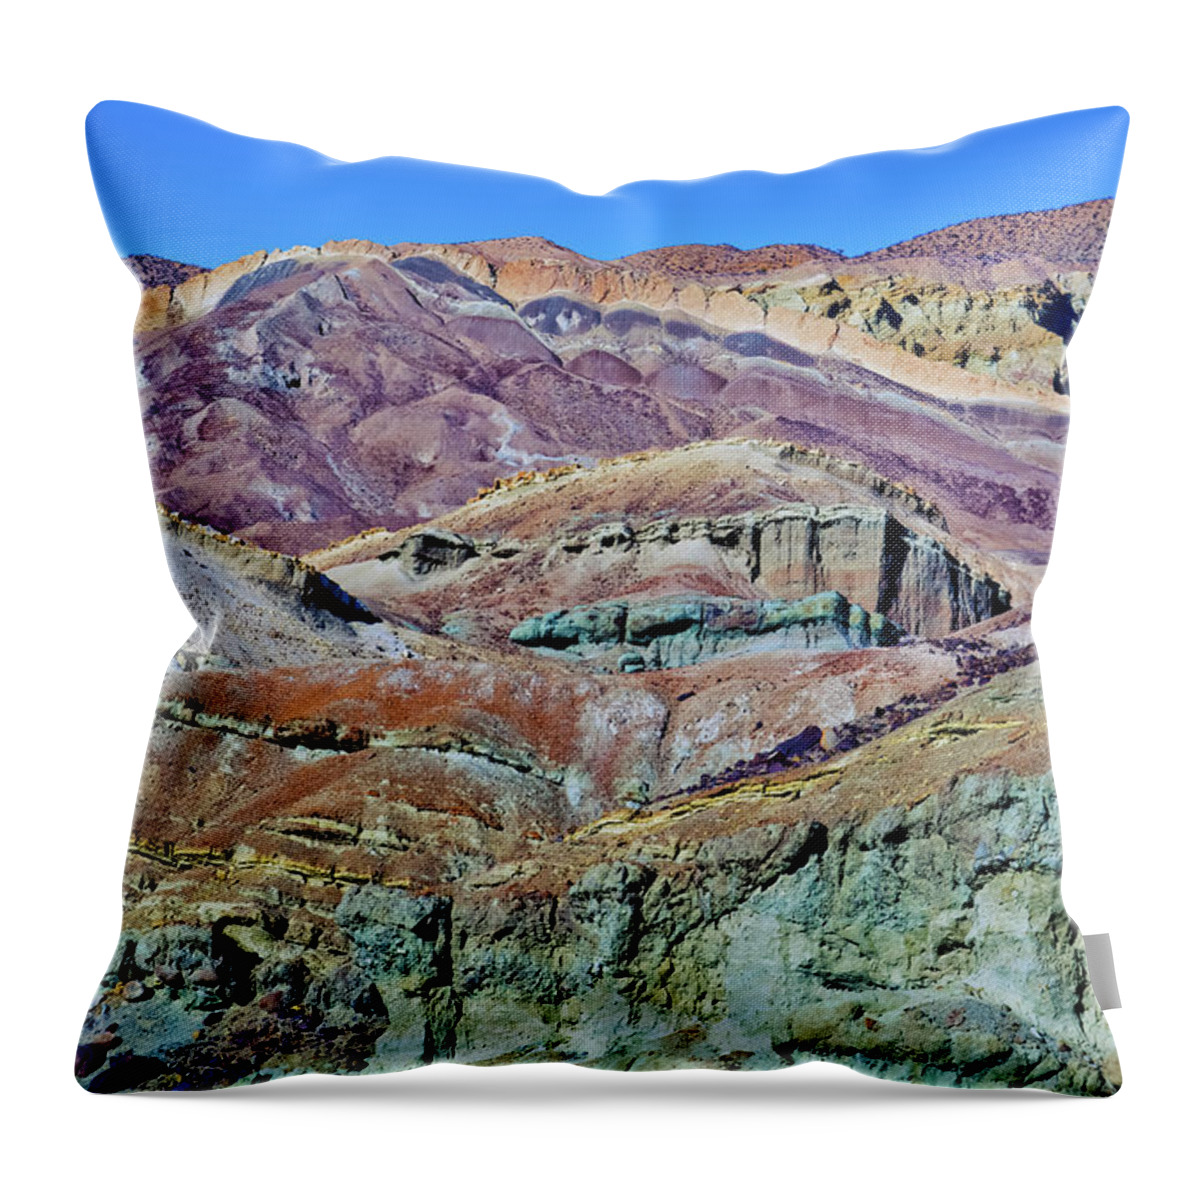 Rainbow Basin Throw Pillow featuring the photograph Rainbow Basin National Natural Landmark by Kyle Hanson